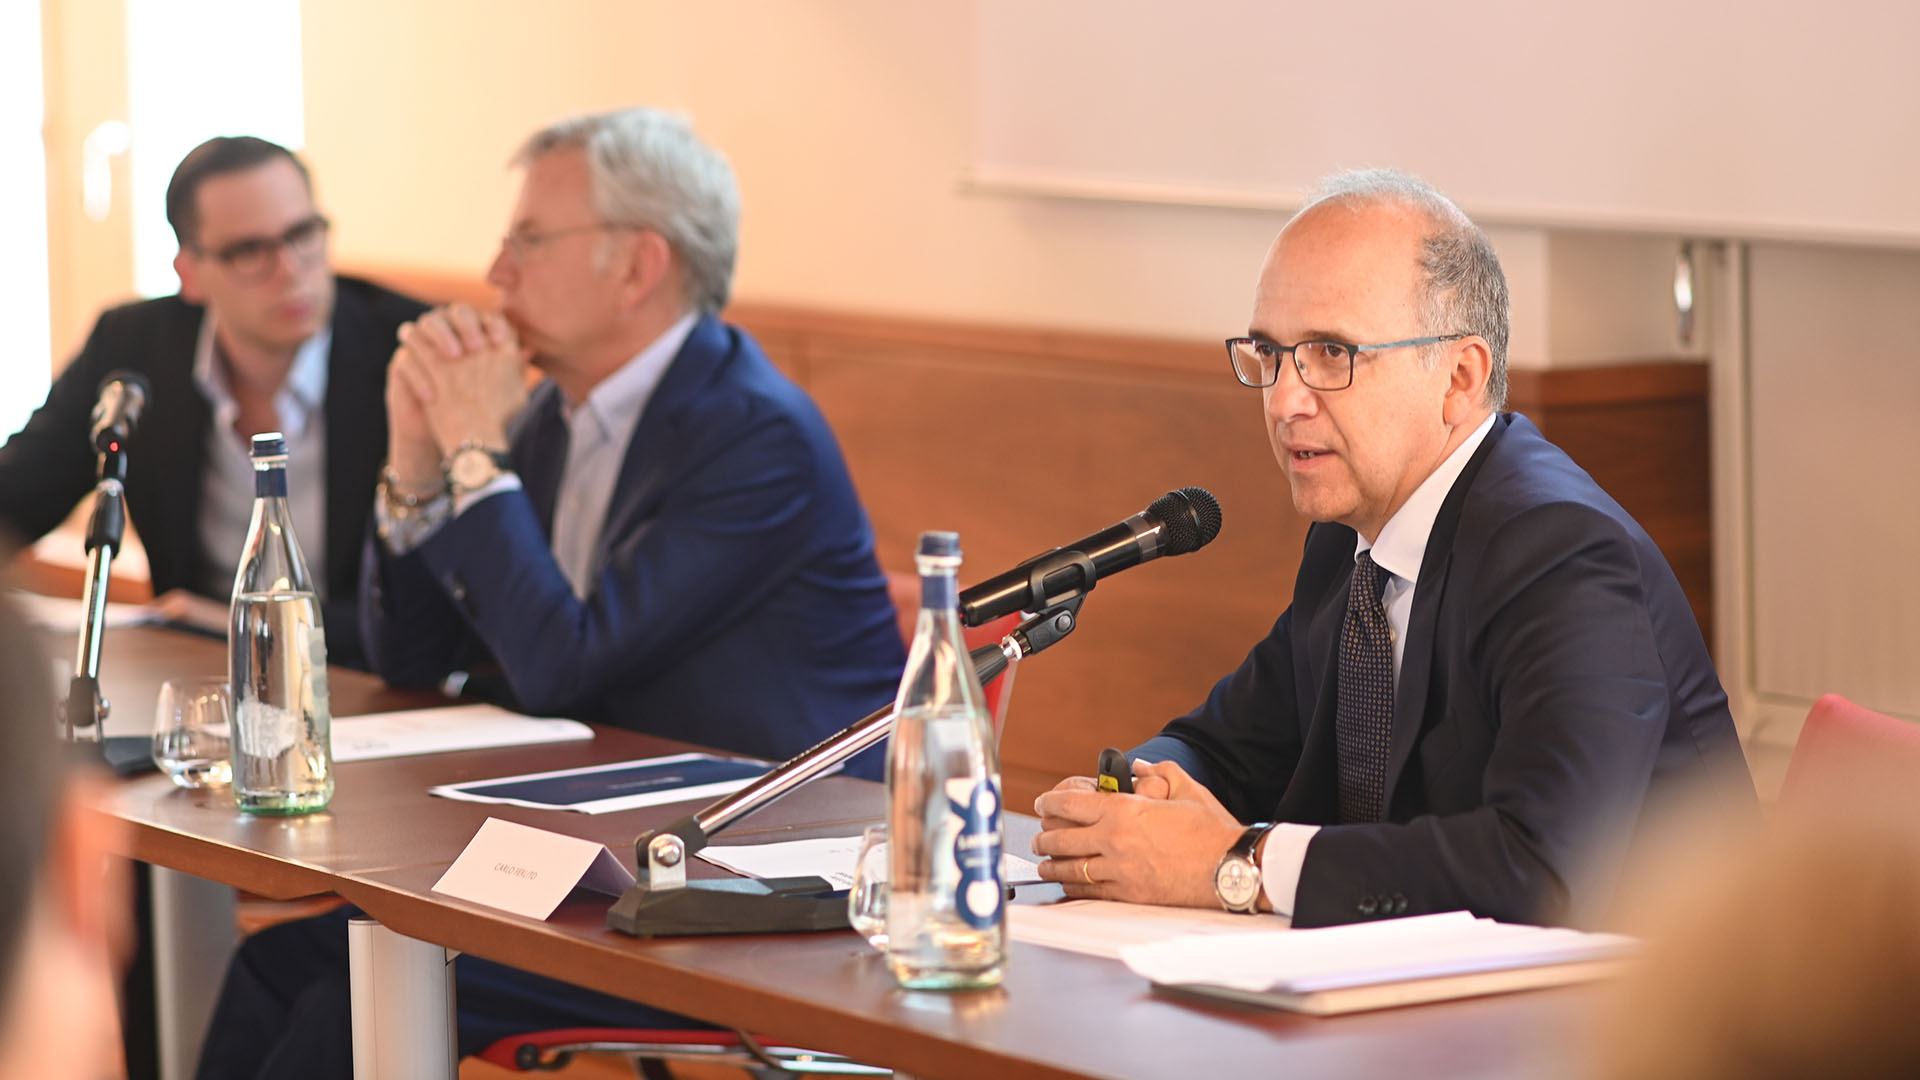 Carlo Ferlito, gi direttore generale di fabbrica d'Armi, da quest'anno affianca il presidente Franco Gussalli Beretta nel ruolo di Amministratore delegato